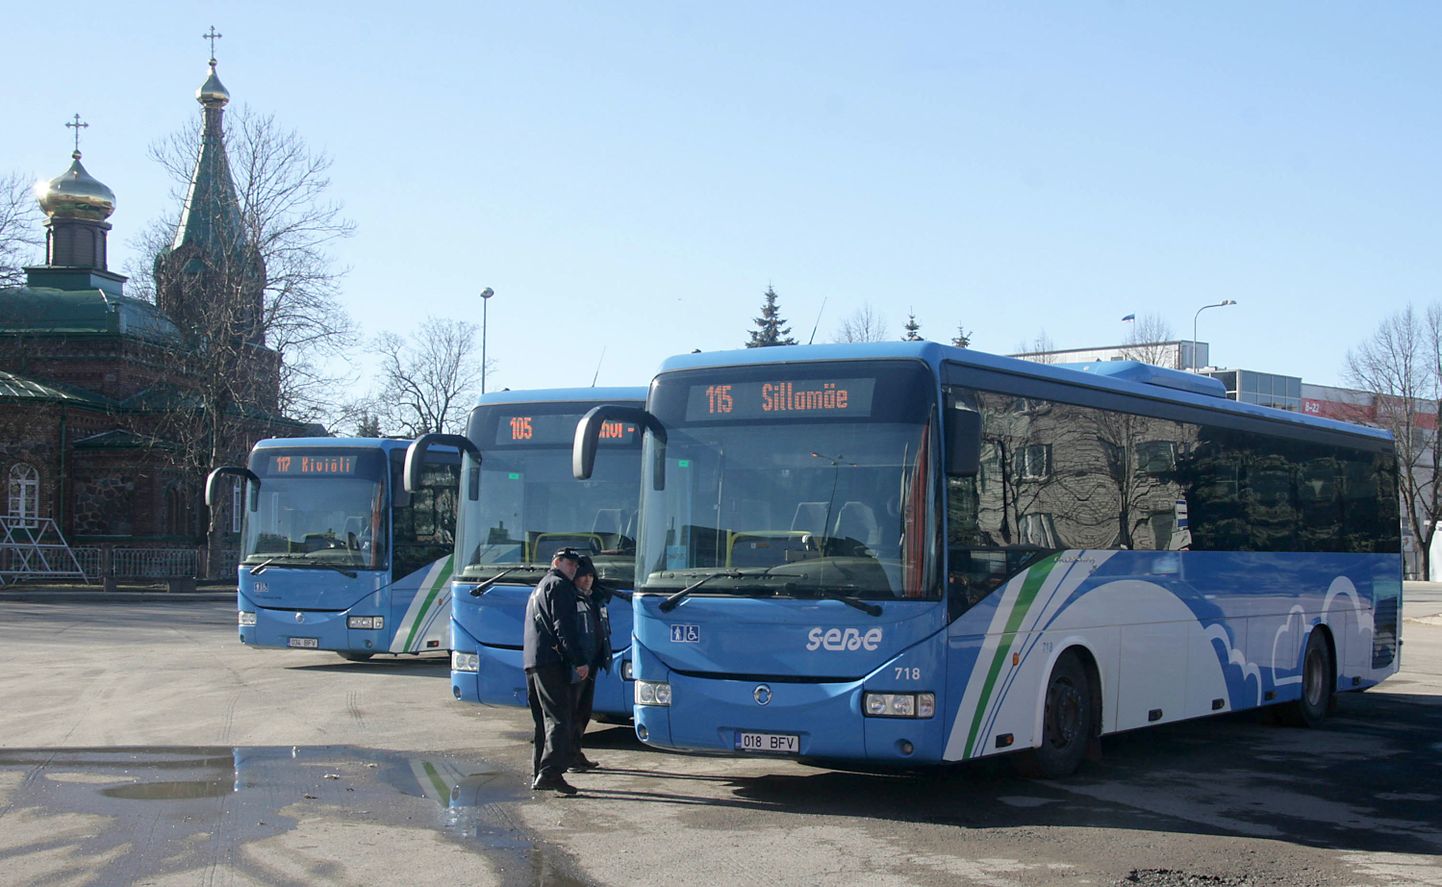 Маршрутные автобусы ходят не в каждую деревню, зато автобус школ по интересам Люганузеской волости четыре раза в день доставляет детей именно к той остановке, которая им нужна.